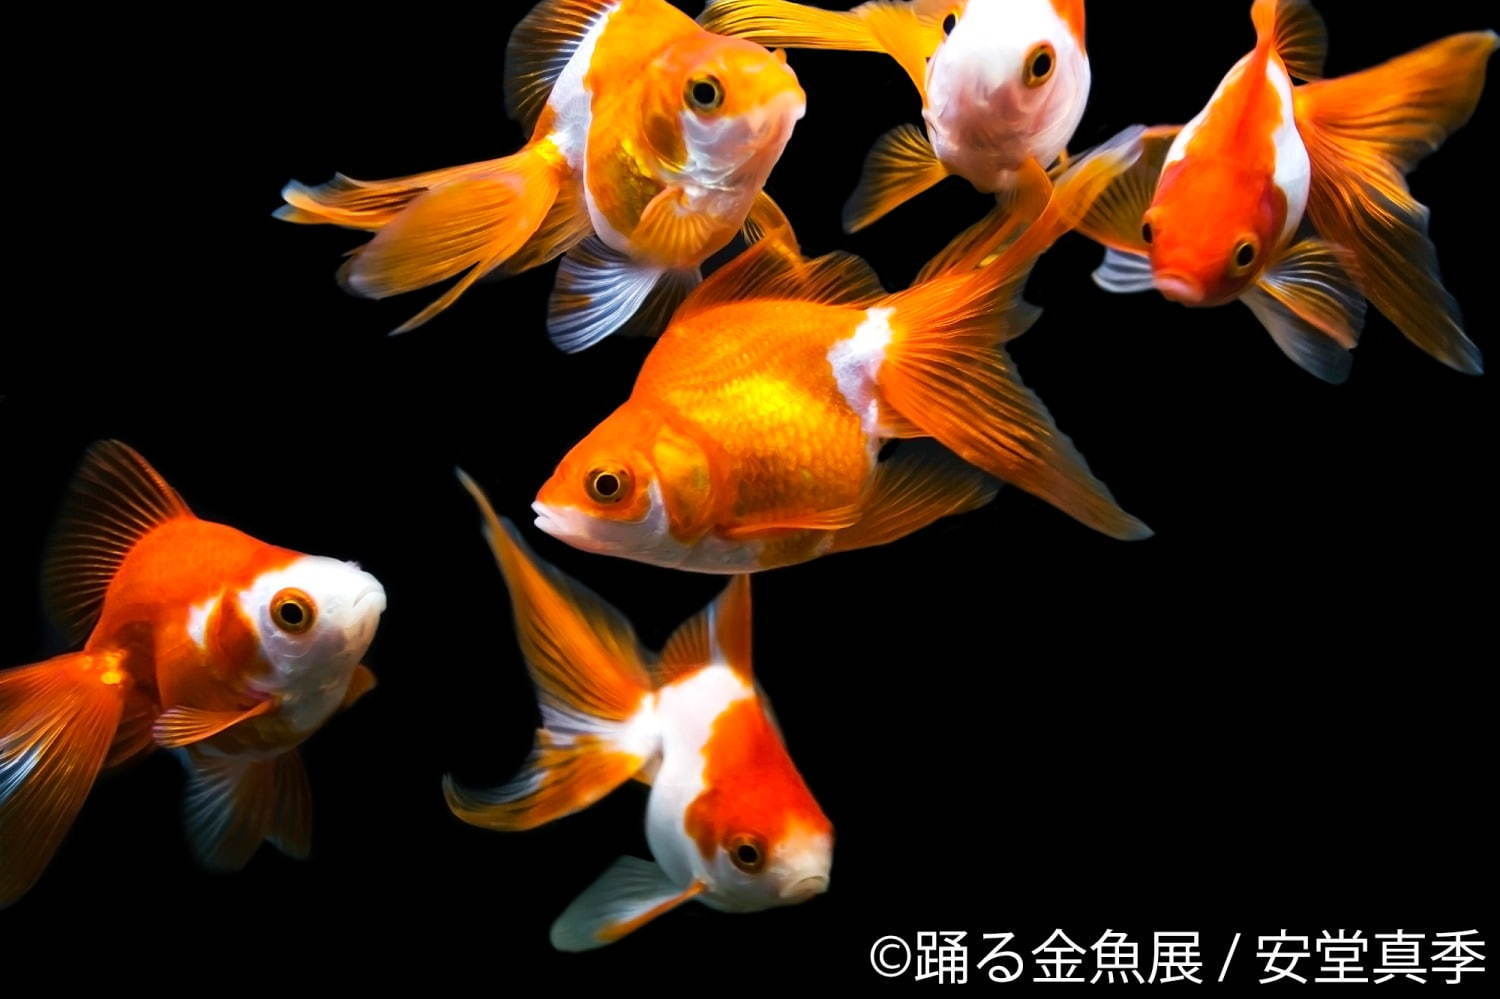 写真5 29 金魚の写真 イラスト展 踊る金魚展 東京 名古屋で ガラスアクセサリーなどグッズ販売も ファッションプレス